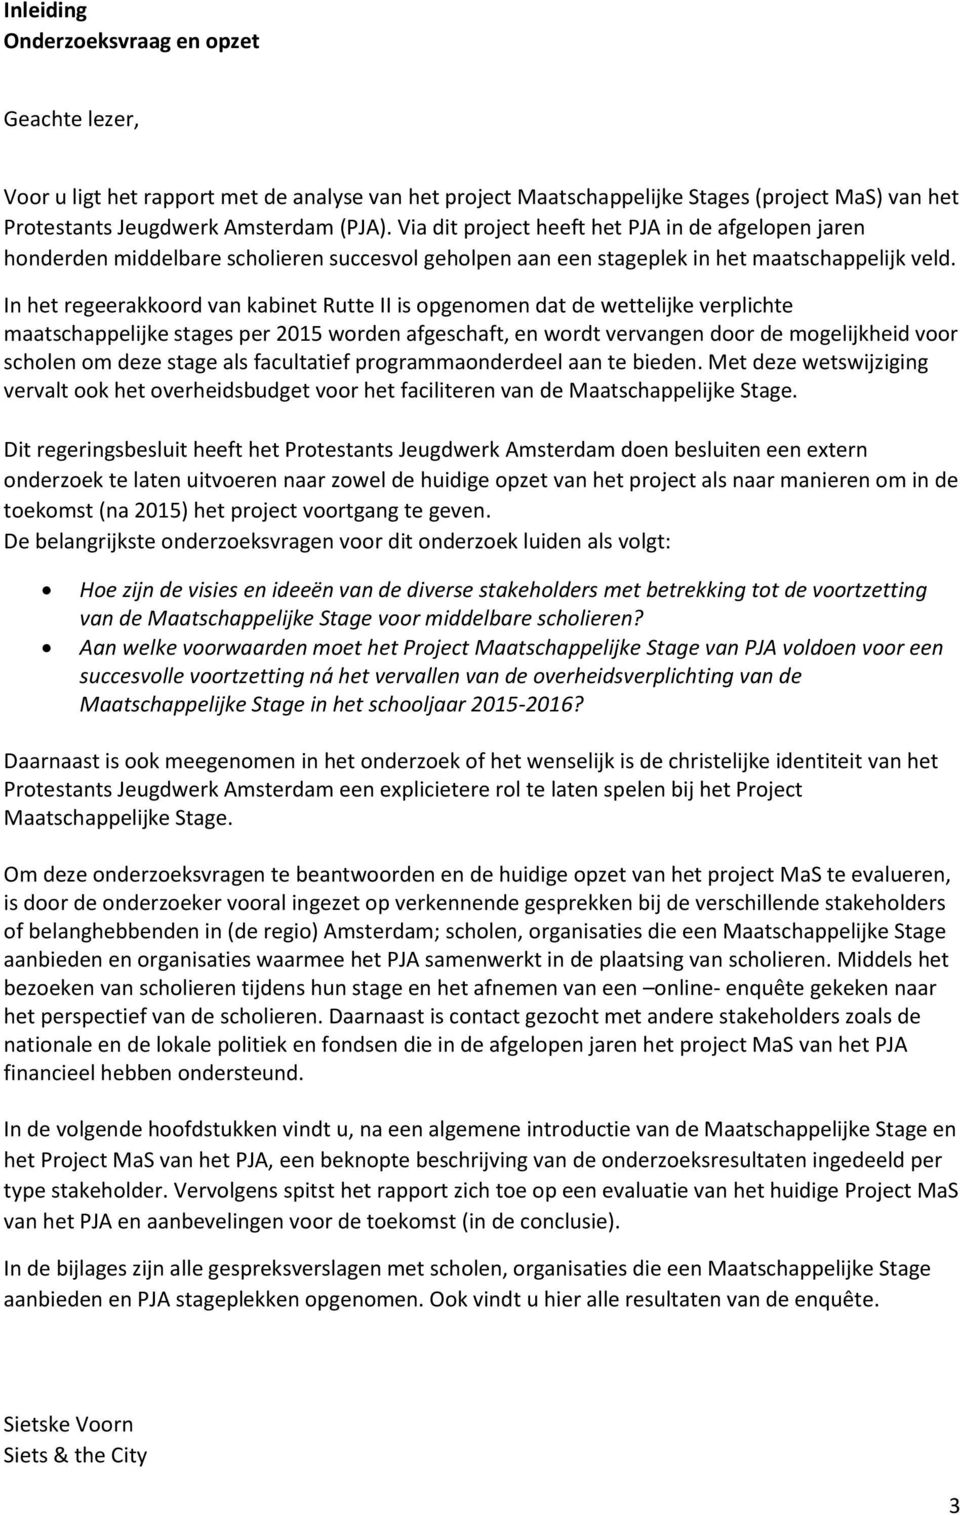 In het regeerakkoord van kabinet Rutte II is opgenomen dat de wettelijke verplichte maatschappelijke stages per 2015 worden afgeschaft, en wordt vervangen door de mogelijkheid voor scholen om deze